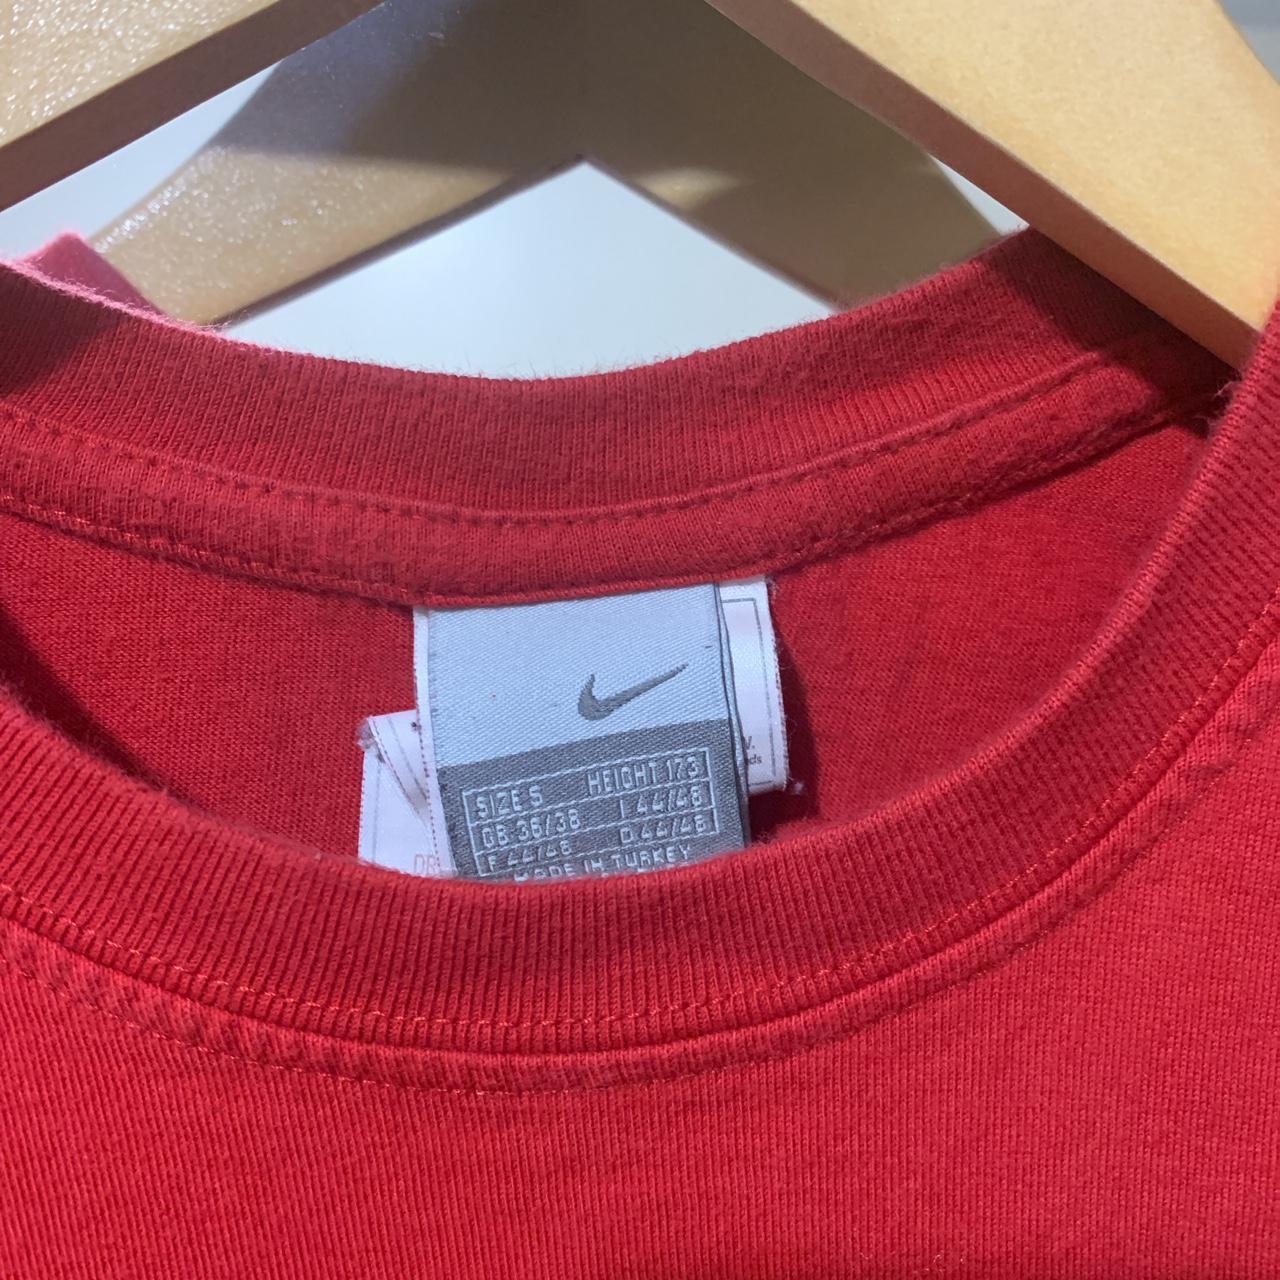 Arizona cardinals Nike football t-shirt Era: - Depop